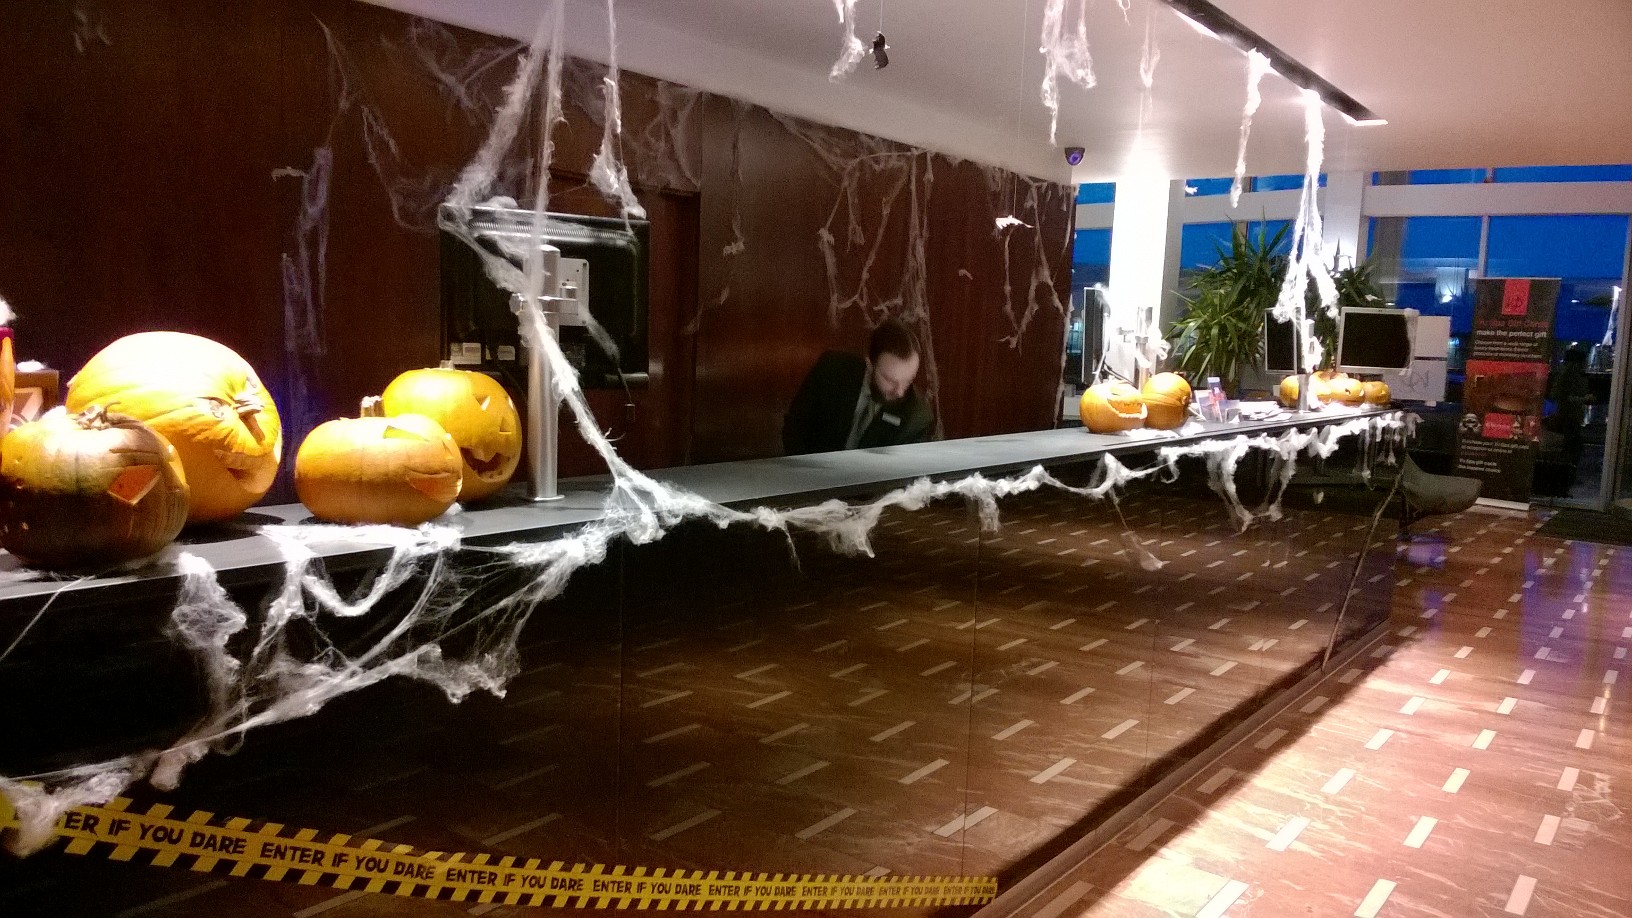 Reception desk pumpkins